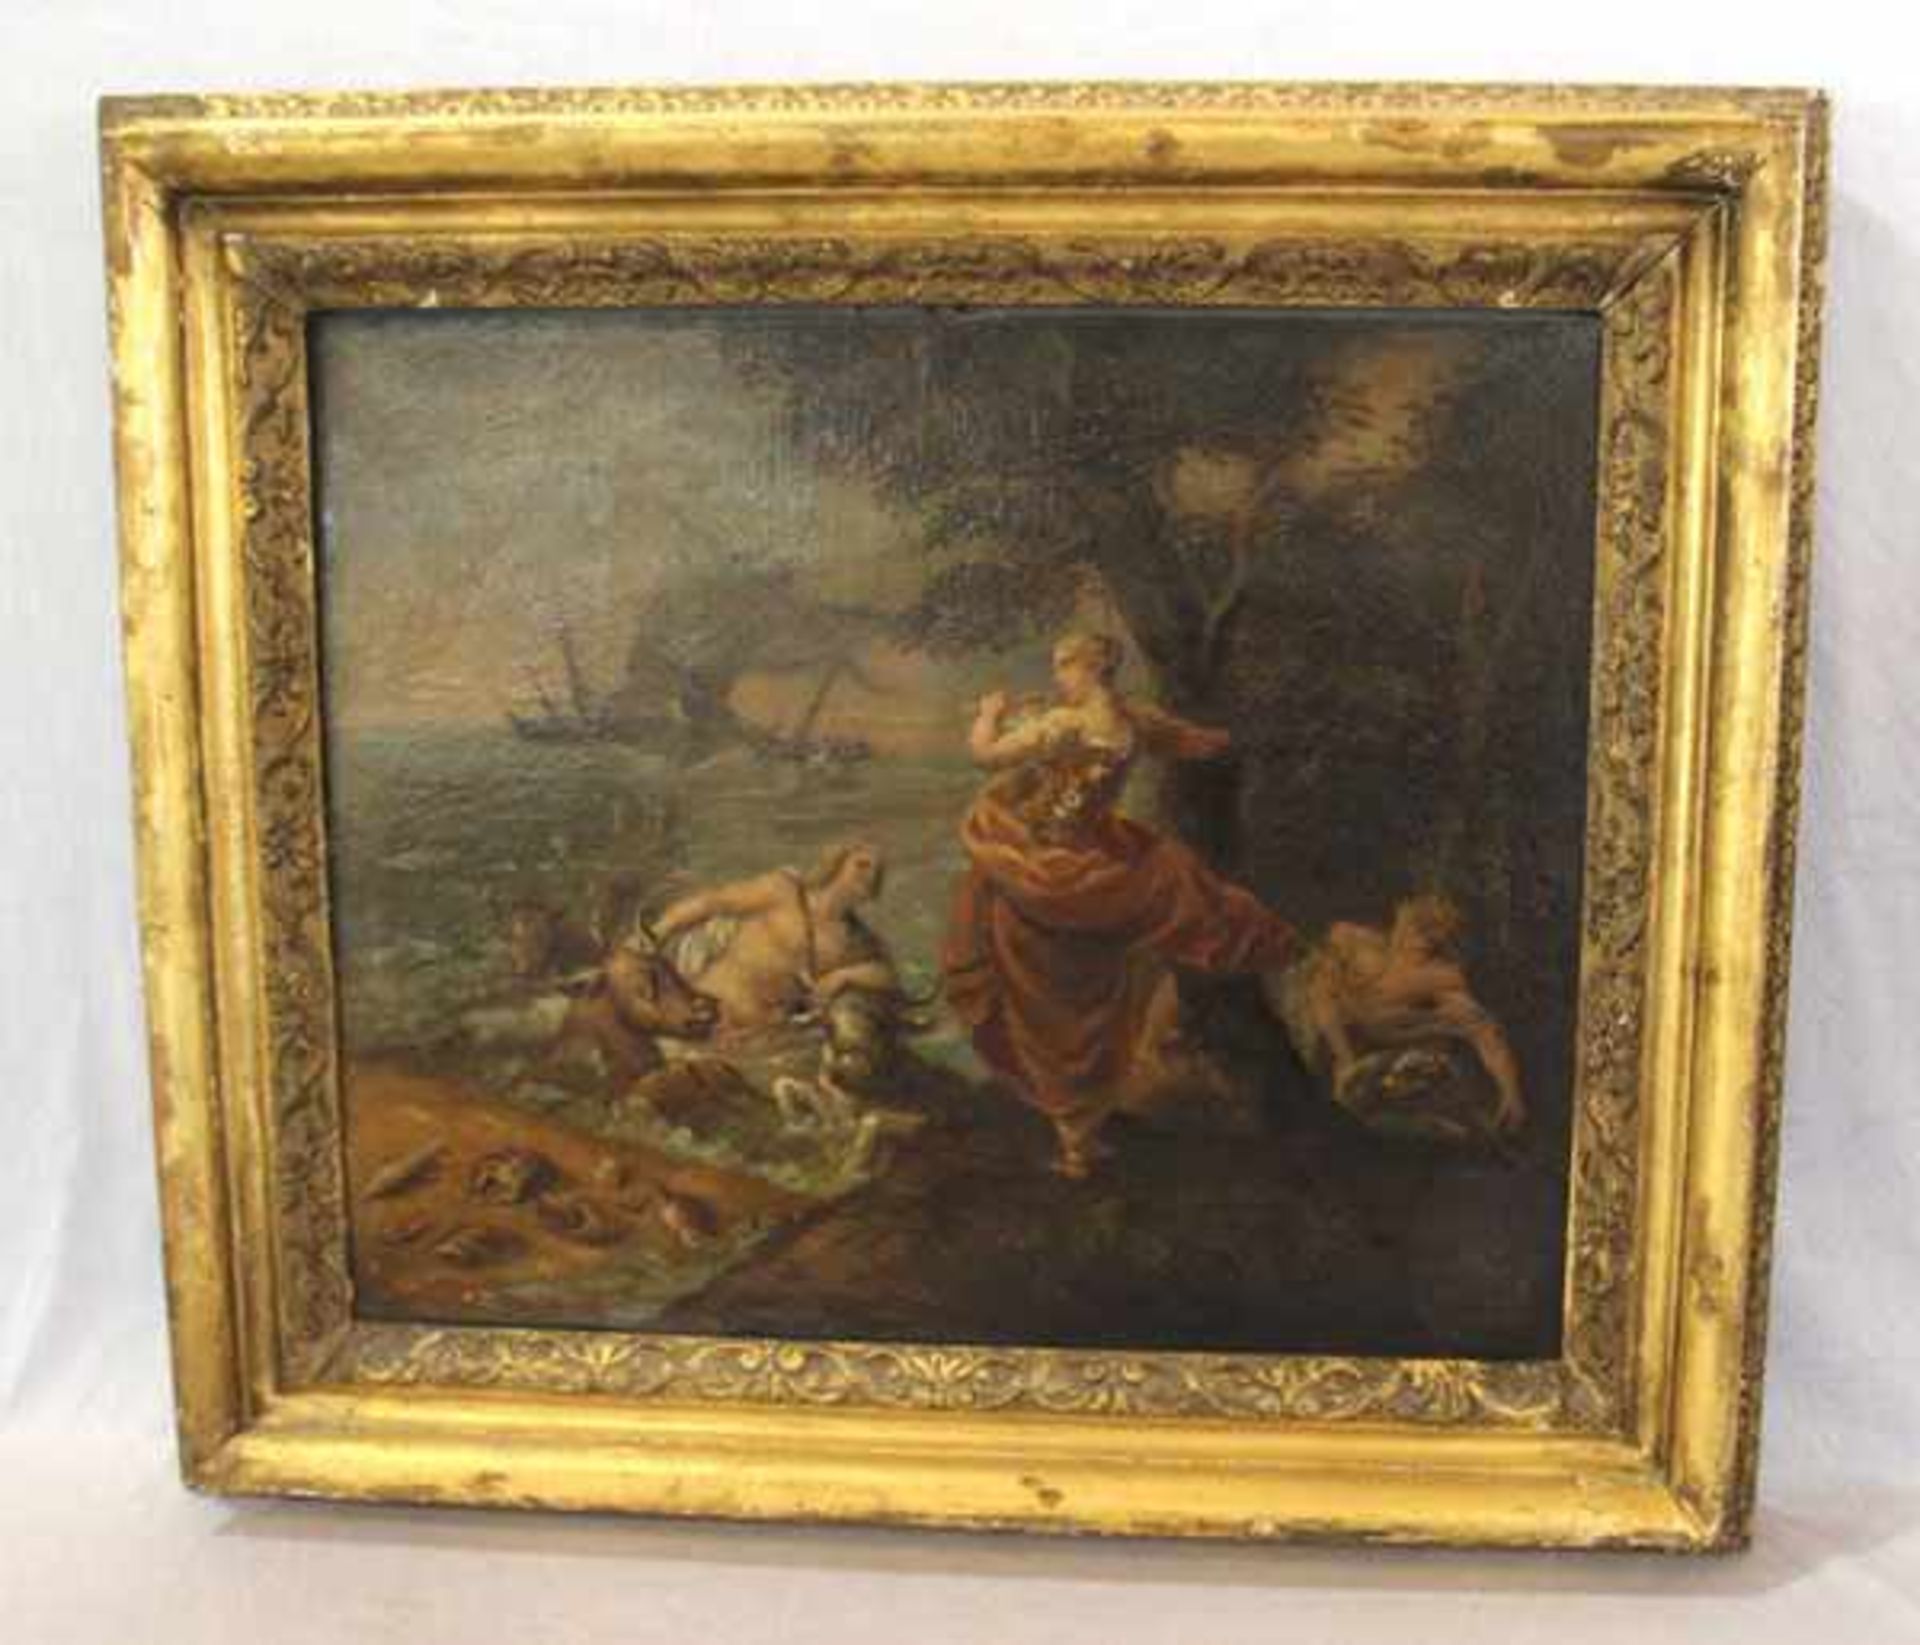 Gemälde ÖL/LW 'Siren mit Flöte warnt die Seefahrer', griechische Mythologie, 18. Jahrhundert,